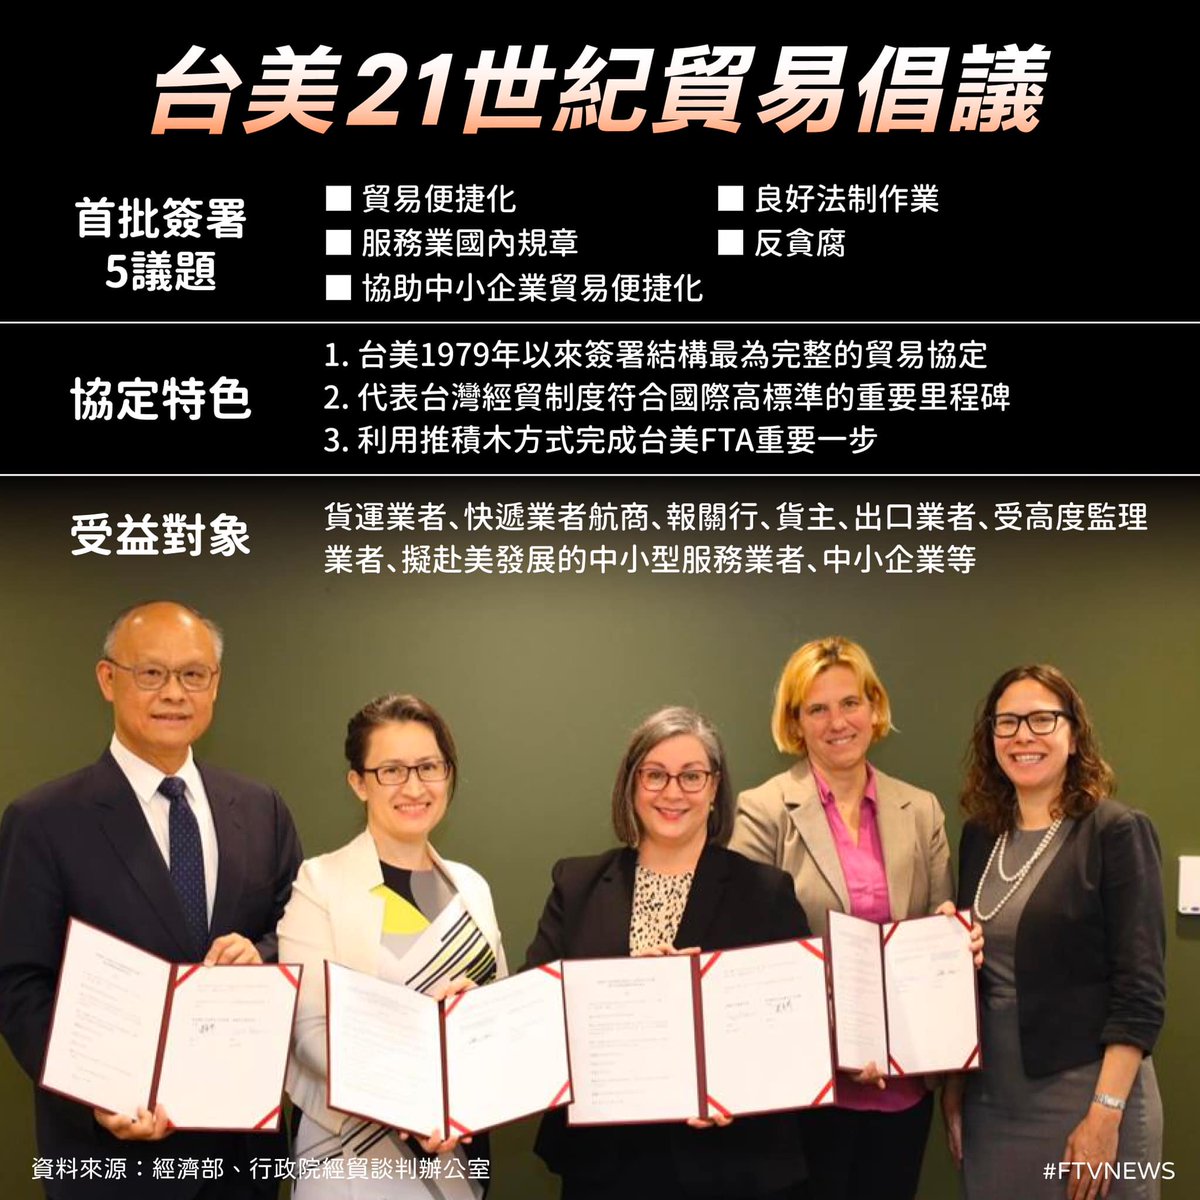 ▌「台美21世紀貿易倡議」完成簽署 為台灣的經濟與產業爭取更多機會 👉 ※點擊圖片可以看到更多說明哦！